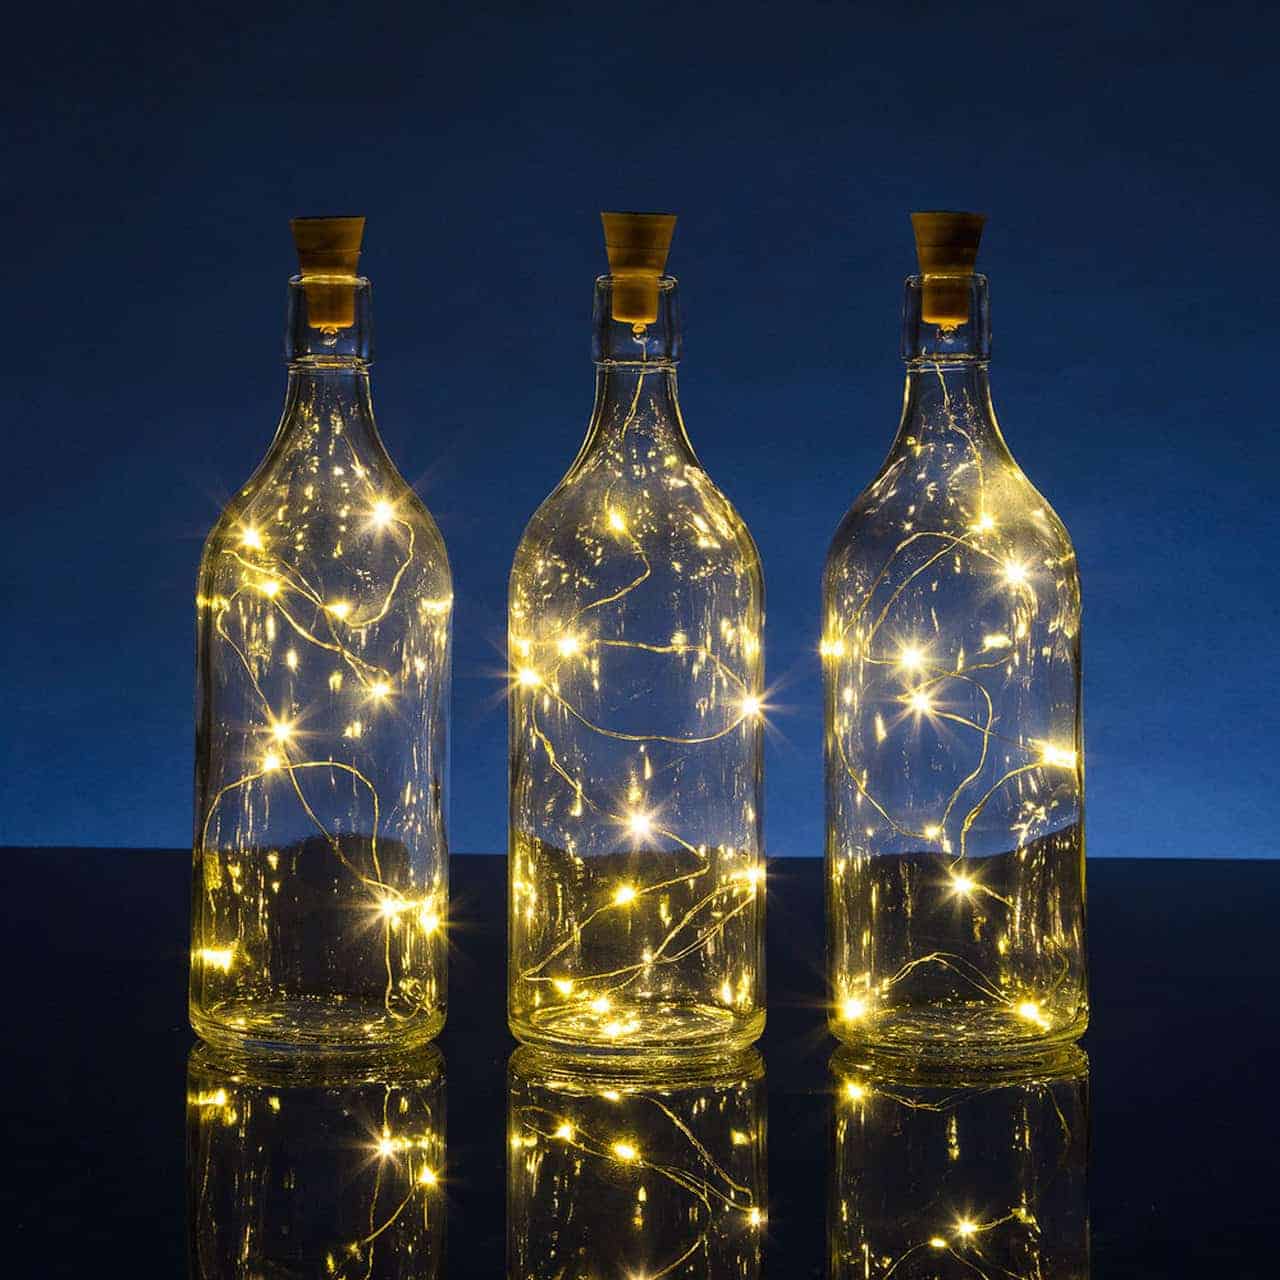 LEDs inside glass bottles